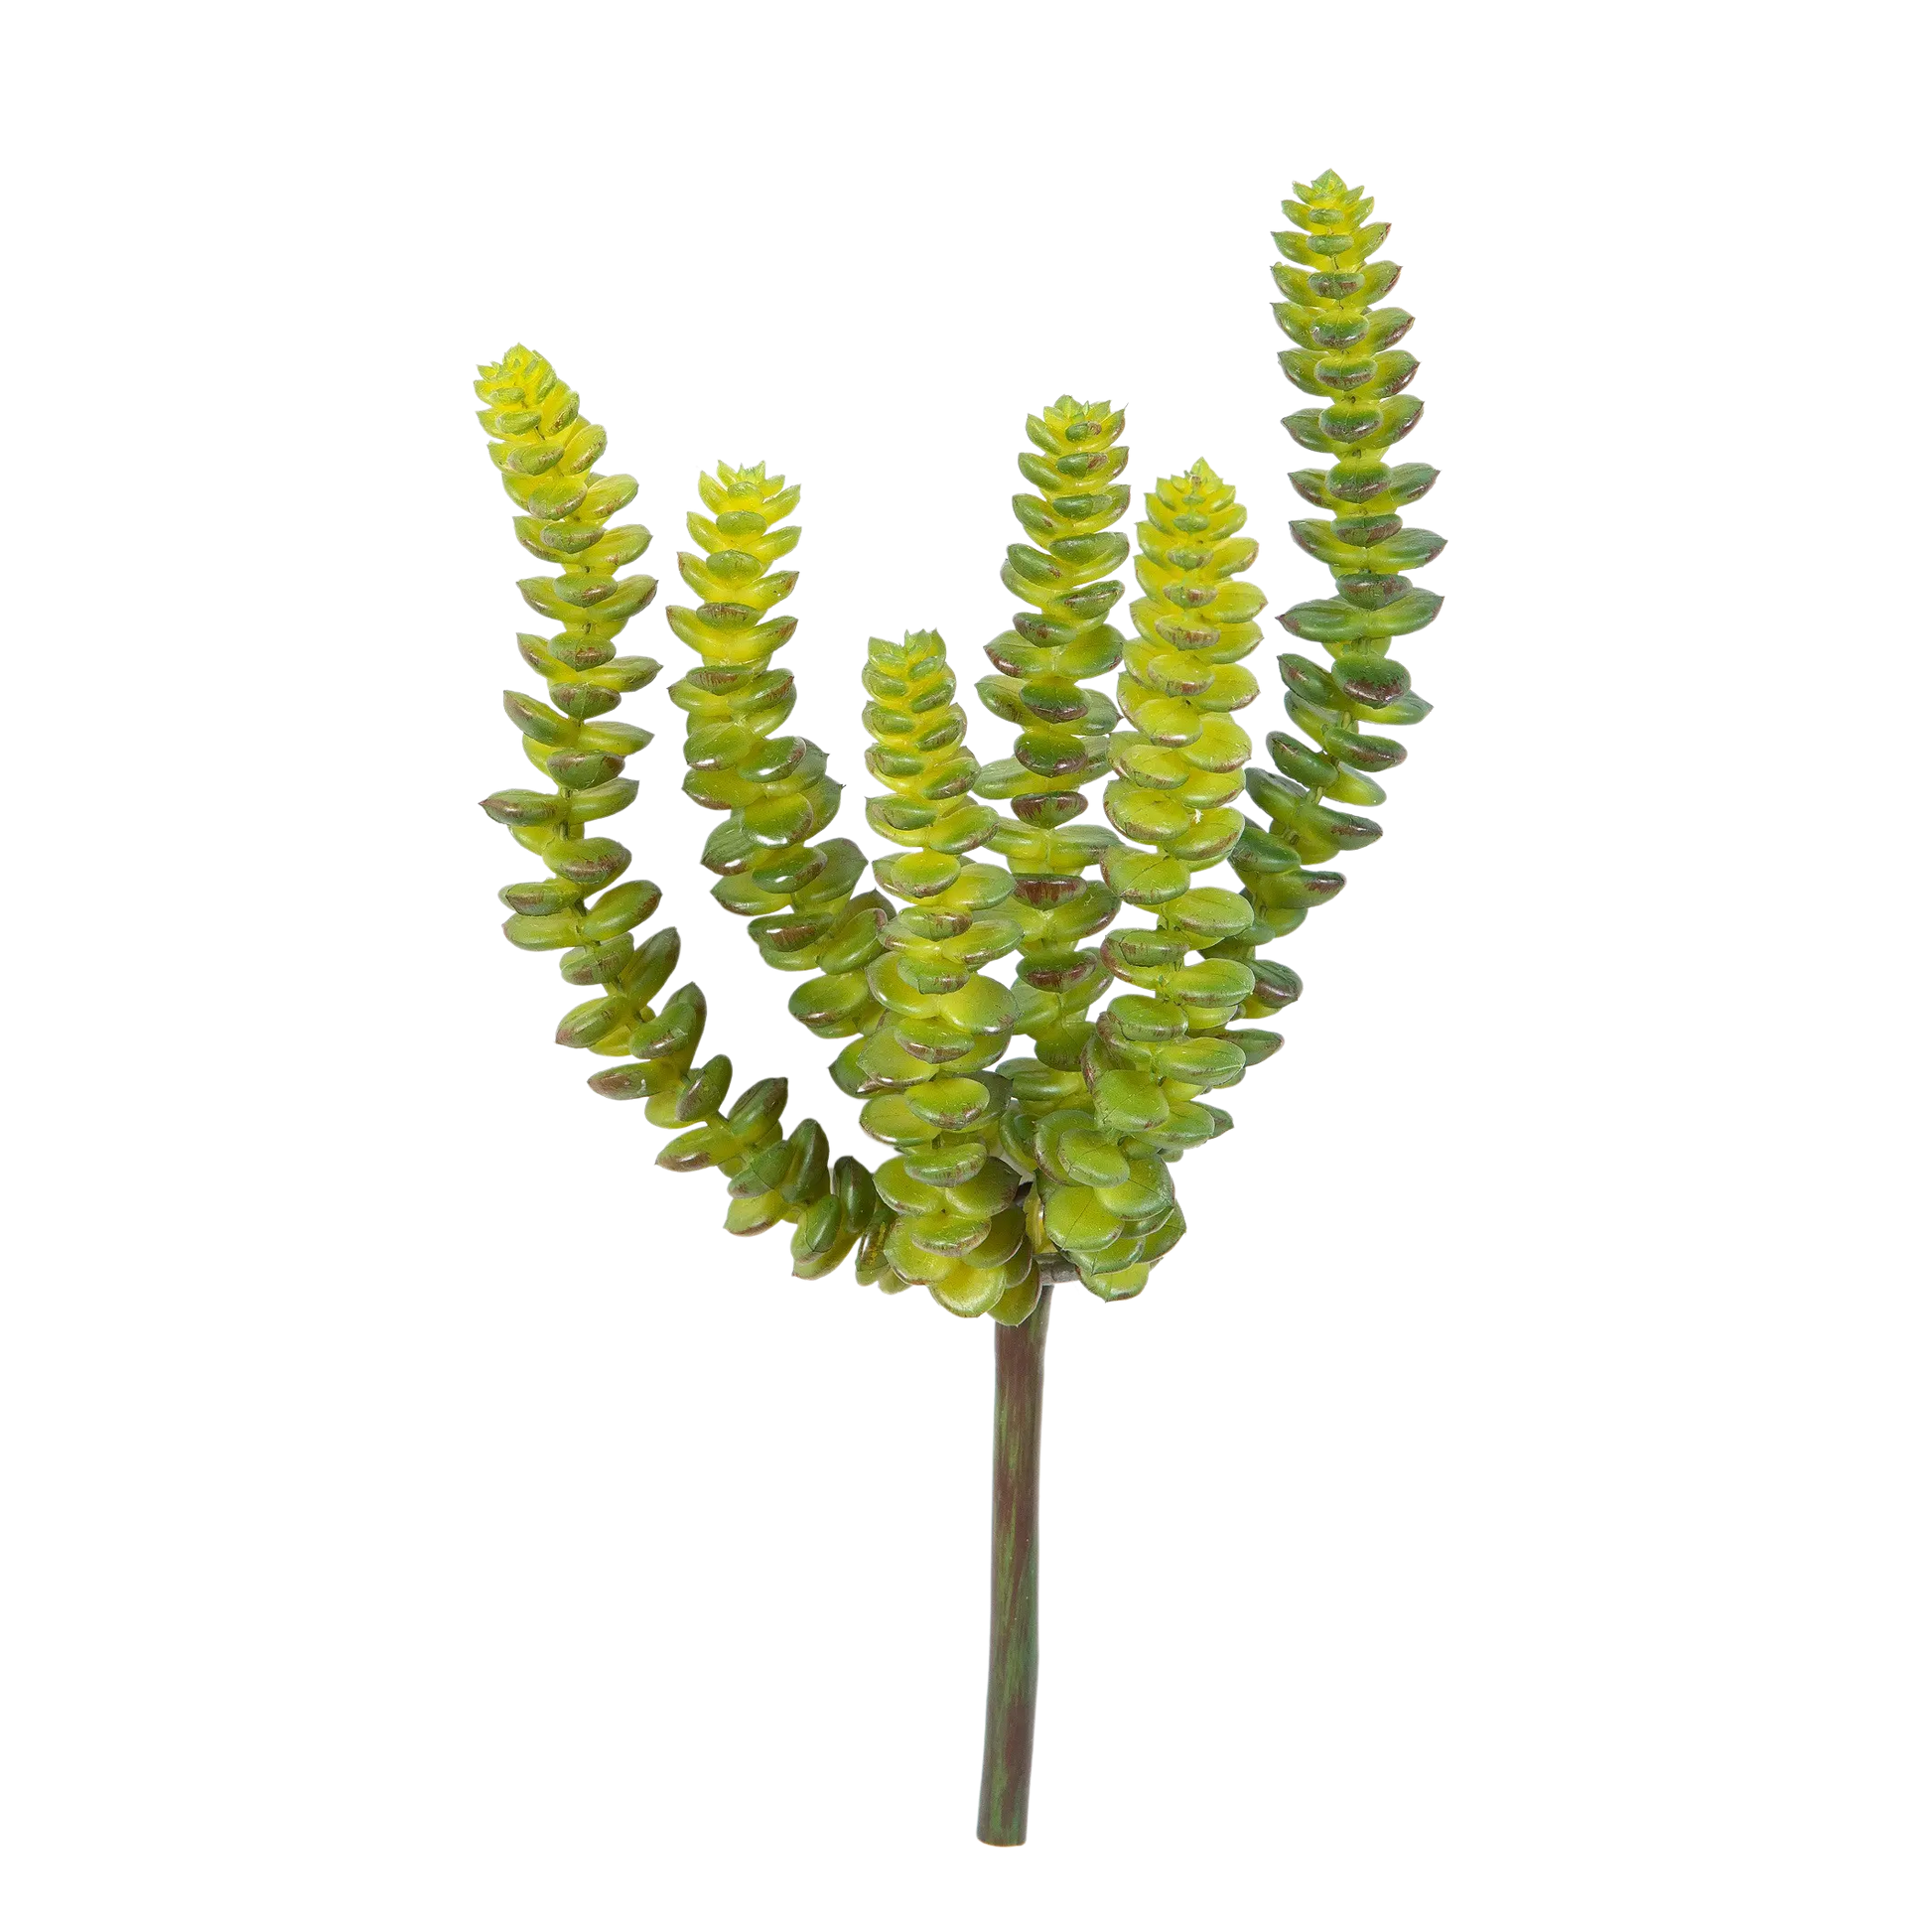 Künstliche Crassula - Hedi | 17 cm auf transparentem Hintergrund mit echt wirkenden Kunstblättern in natürlicher Anordnung. | aplanta Kunstpflanzen